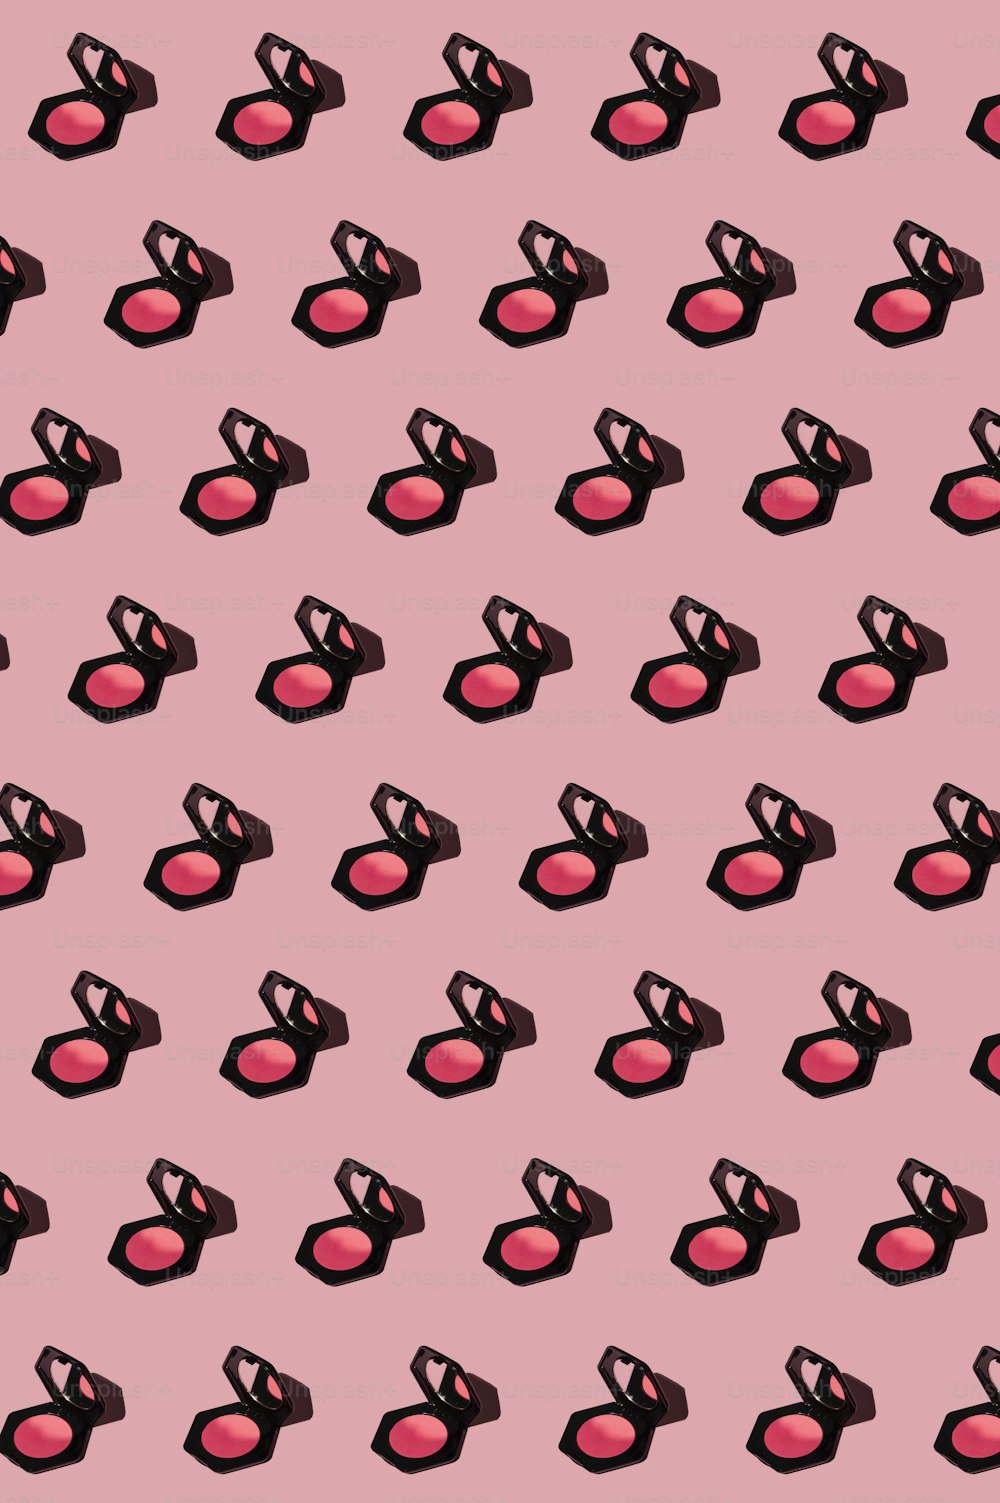 립스틱 패턴이 있는 분홍색 배경